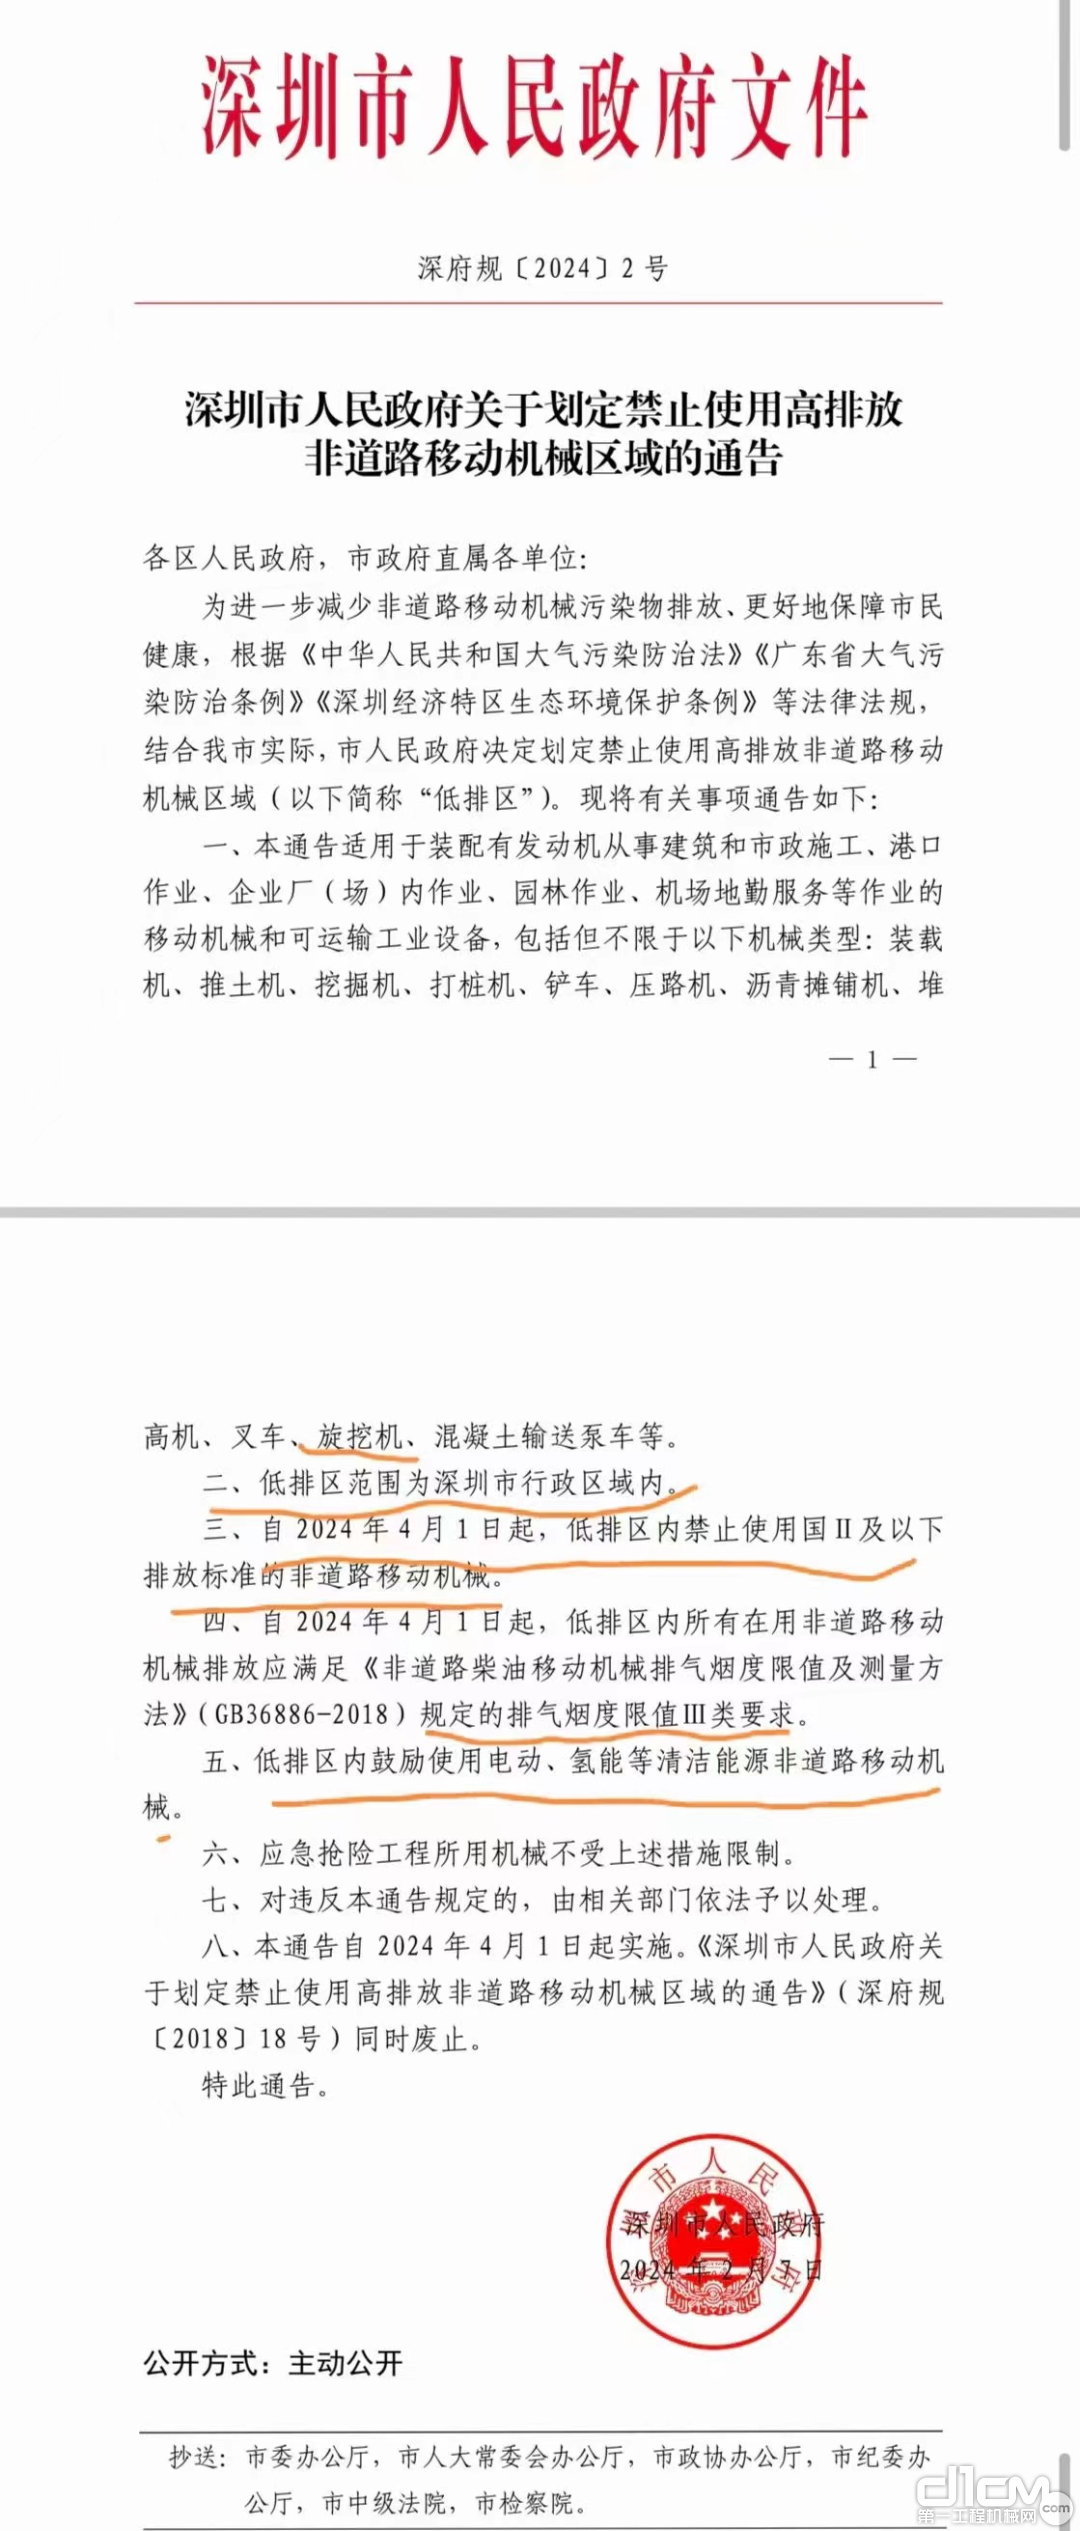 深圳市人民政府文件截图